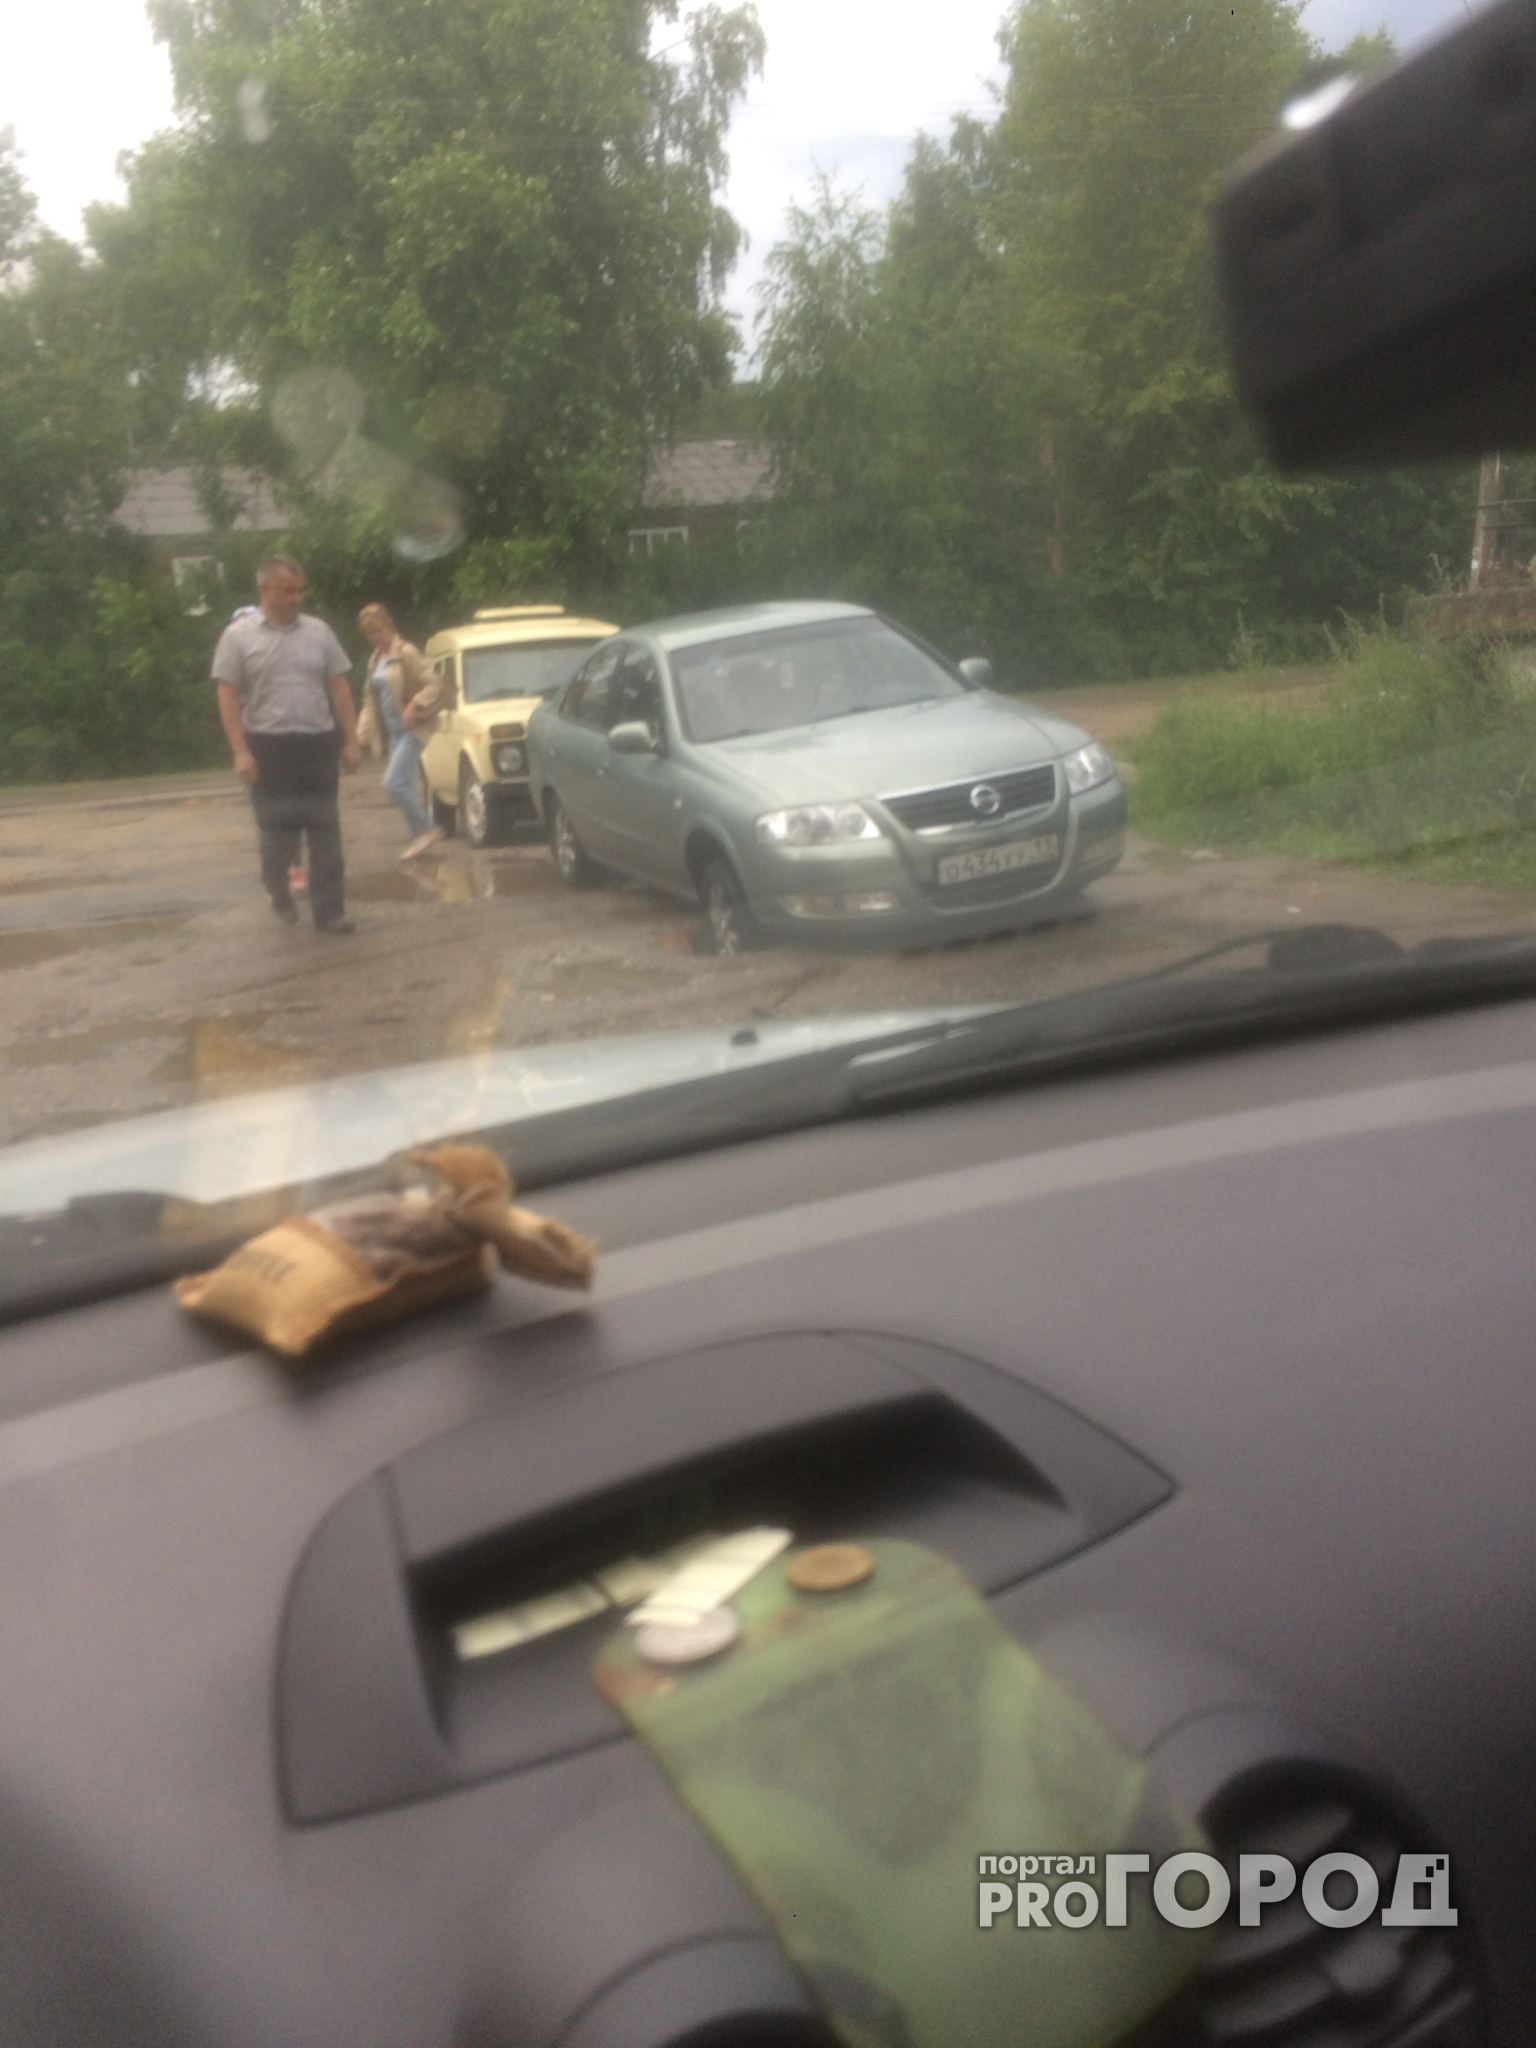 В Сыктывкаре такси провалилось в дорожную яму, похожую на воронку после снаряда (фото)